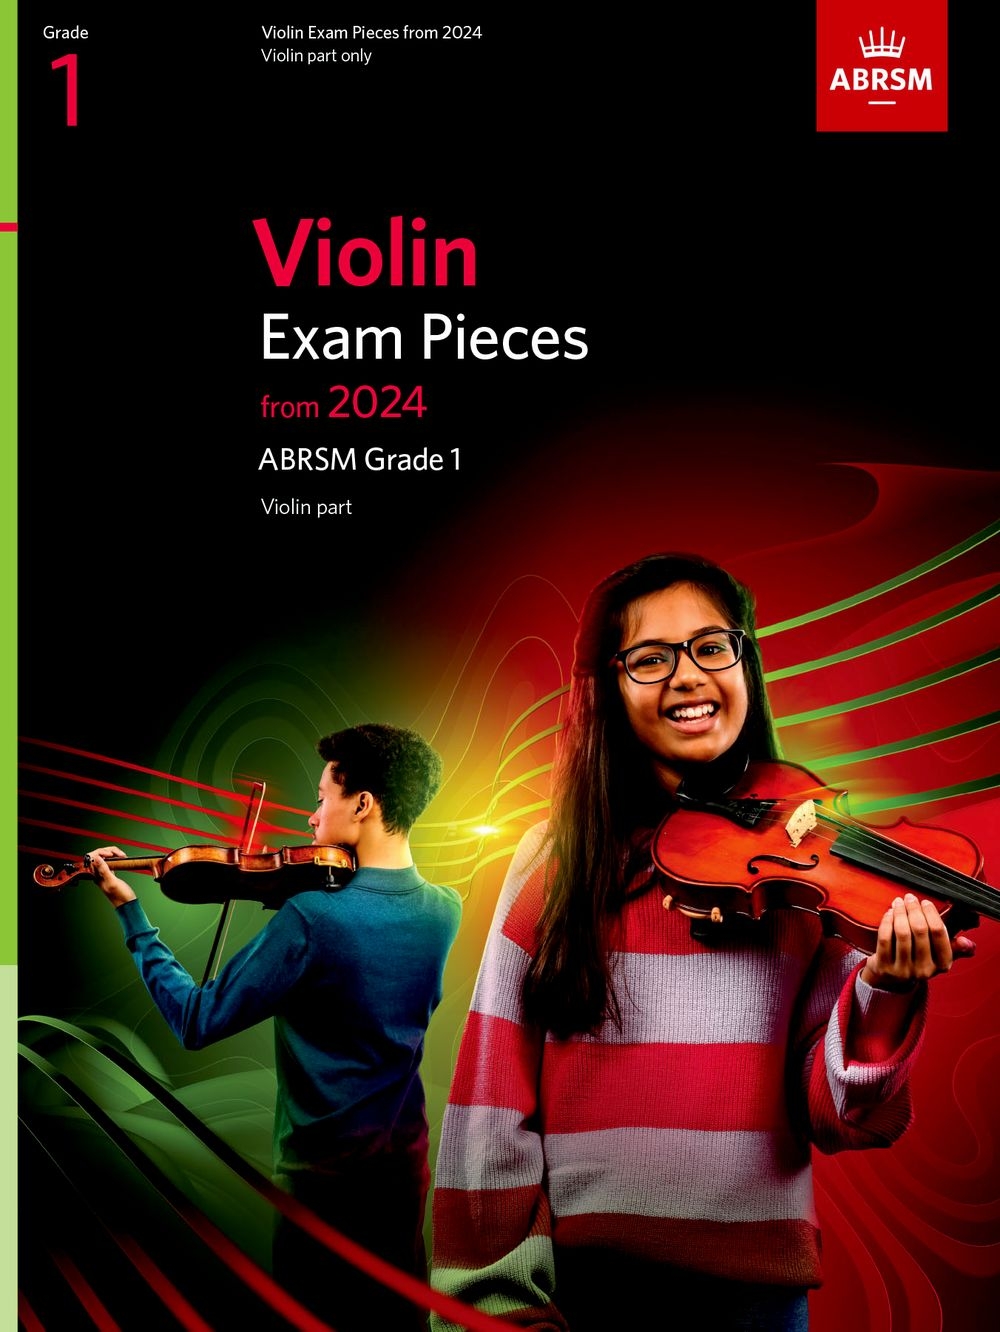 Violin Exam Pieces from 2024, ABRSM Grade 1